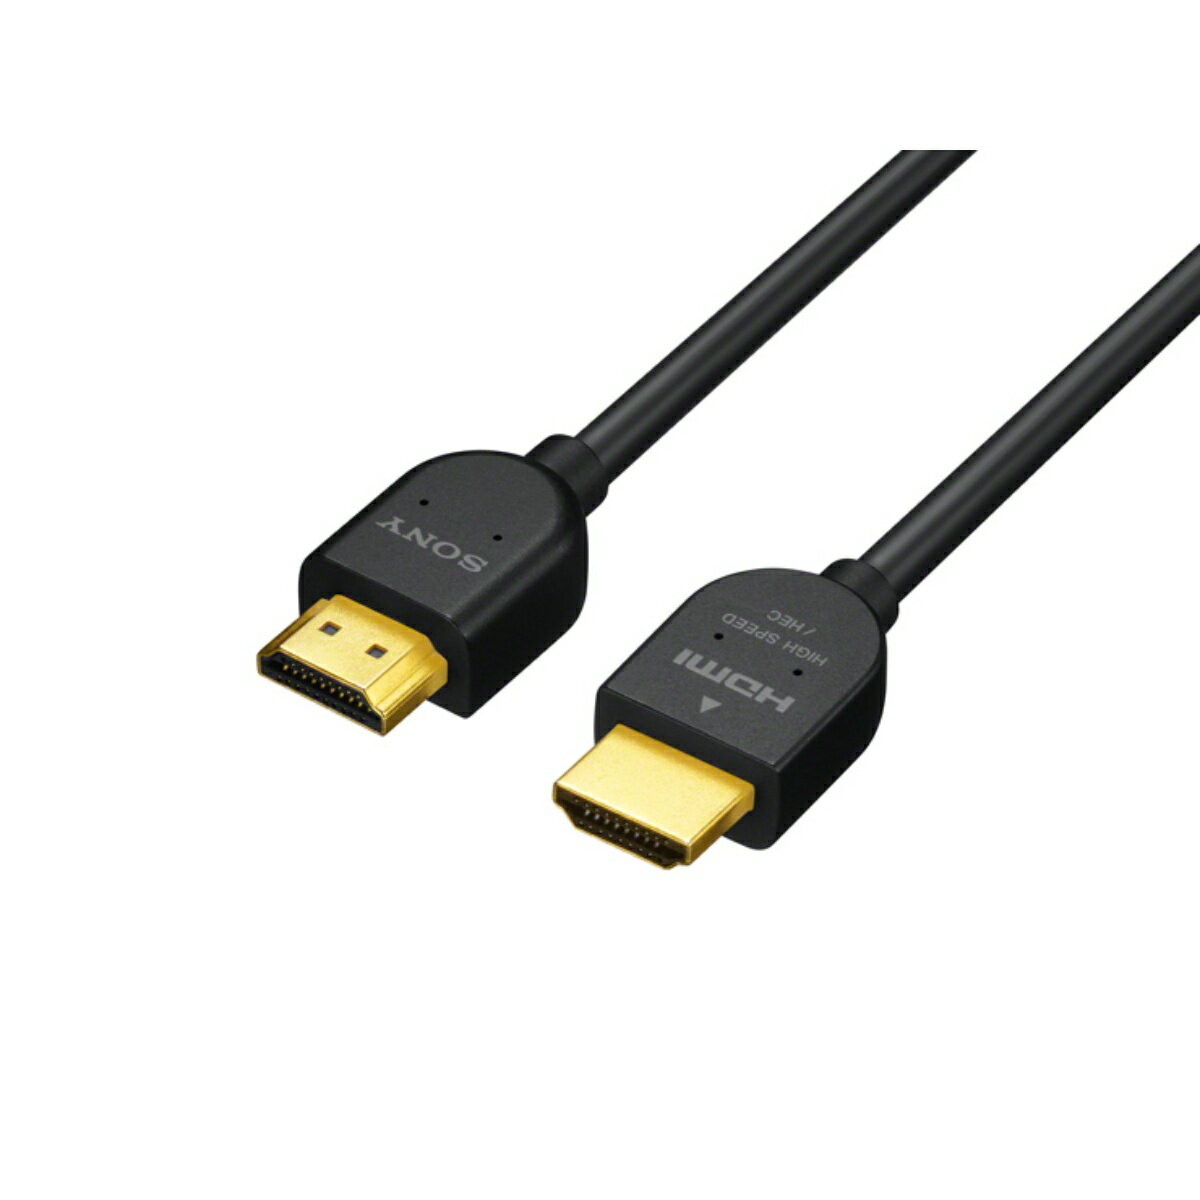 商品名：ソニー SONY DLC-HJ10 HDMI ケーブル ブラック 1m内容量：1本JANコード：4905524850482発売元、製造元、輸入元又は販売元：ソニーマーケティング株式会社原産国：中華人民共和国商品番号：101-60091商品説明HDMI端子搭載テレビやBDレコーダーなどにすっきり配線。フルHDの約4倍の解像度を実現する4K解像度対応。広告文責：アットライフ株式会社TEL 050-3196-1510 ※商品パッケージは変更の場合あり。メーカー欠品または完売の際、キャンセルをお願いすることがあります。ご了承ください。